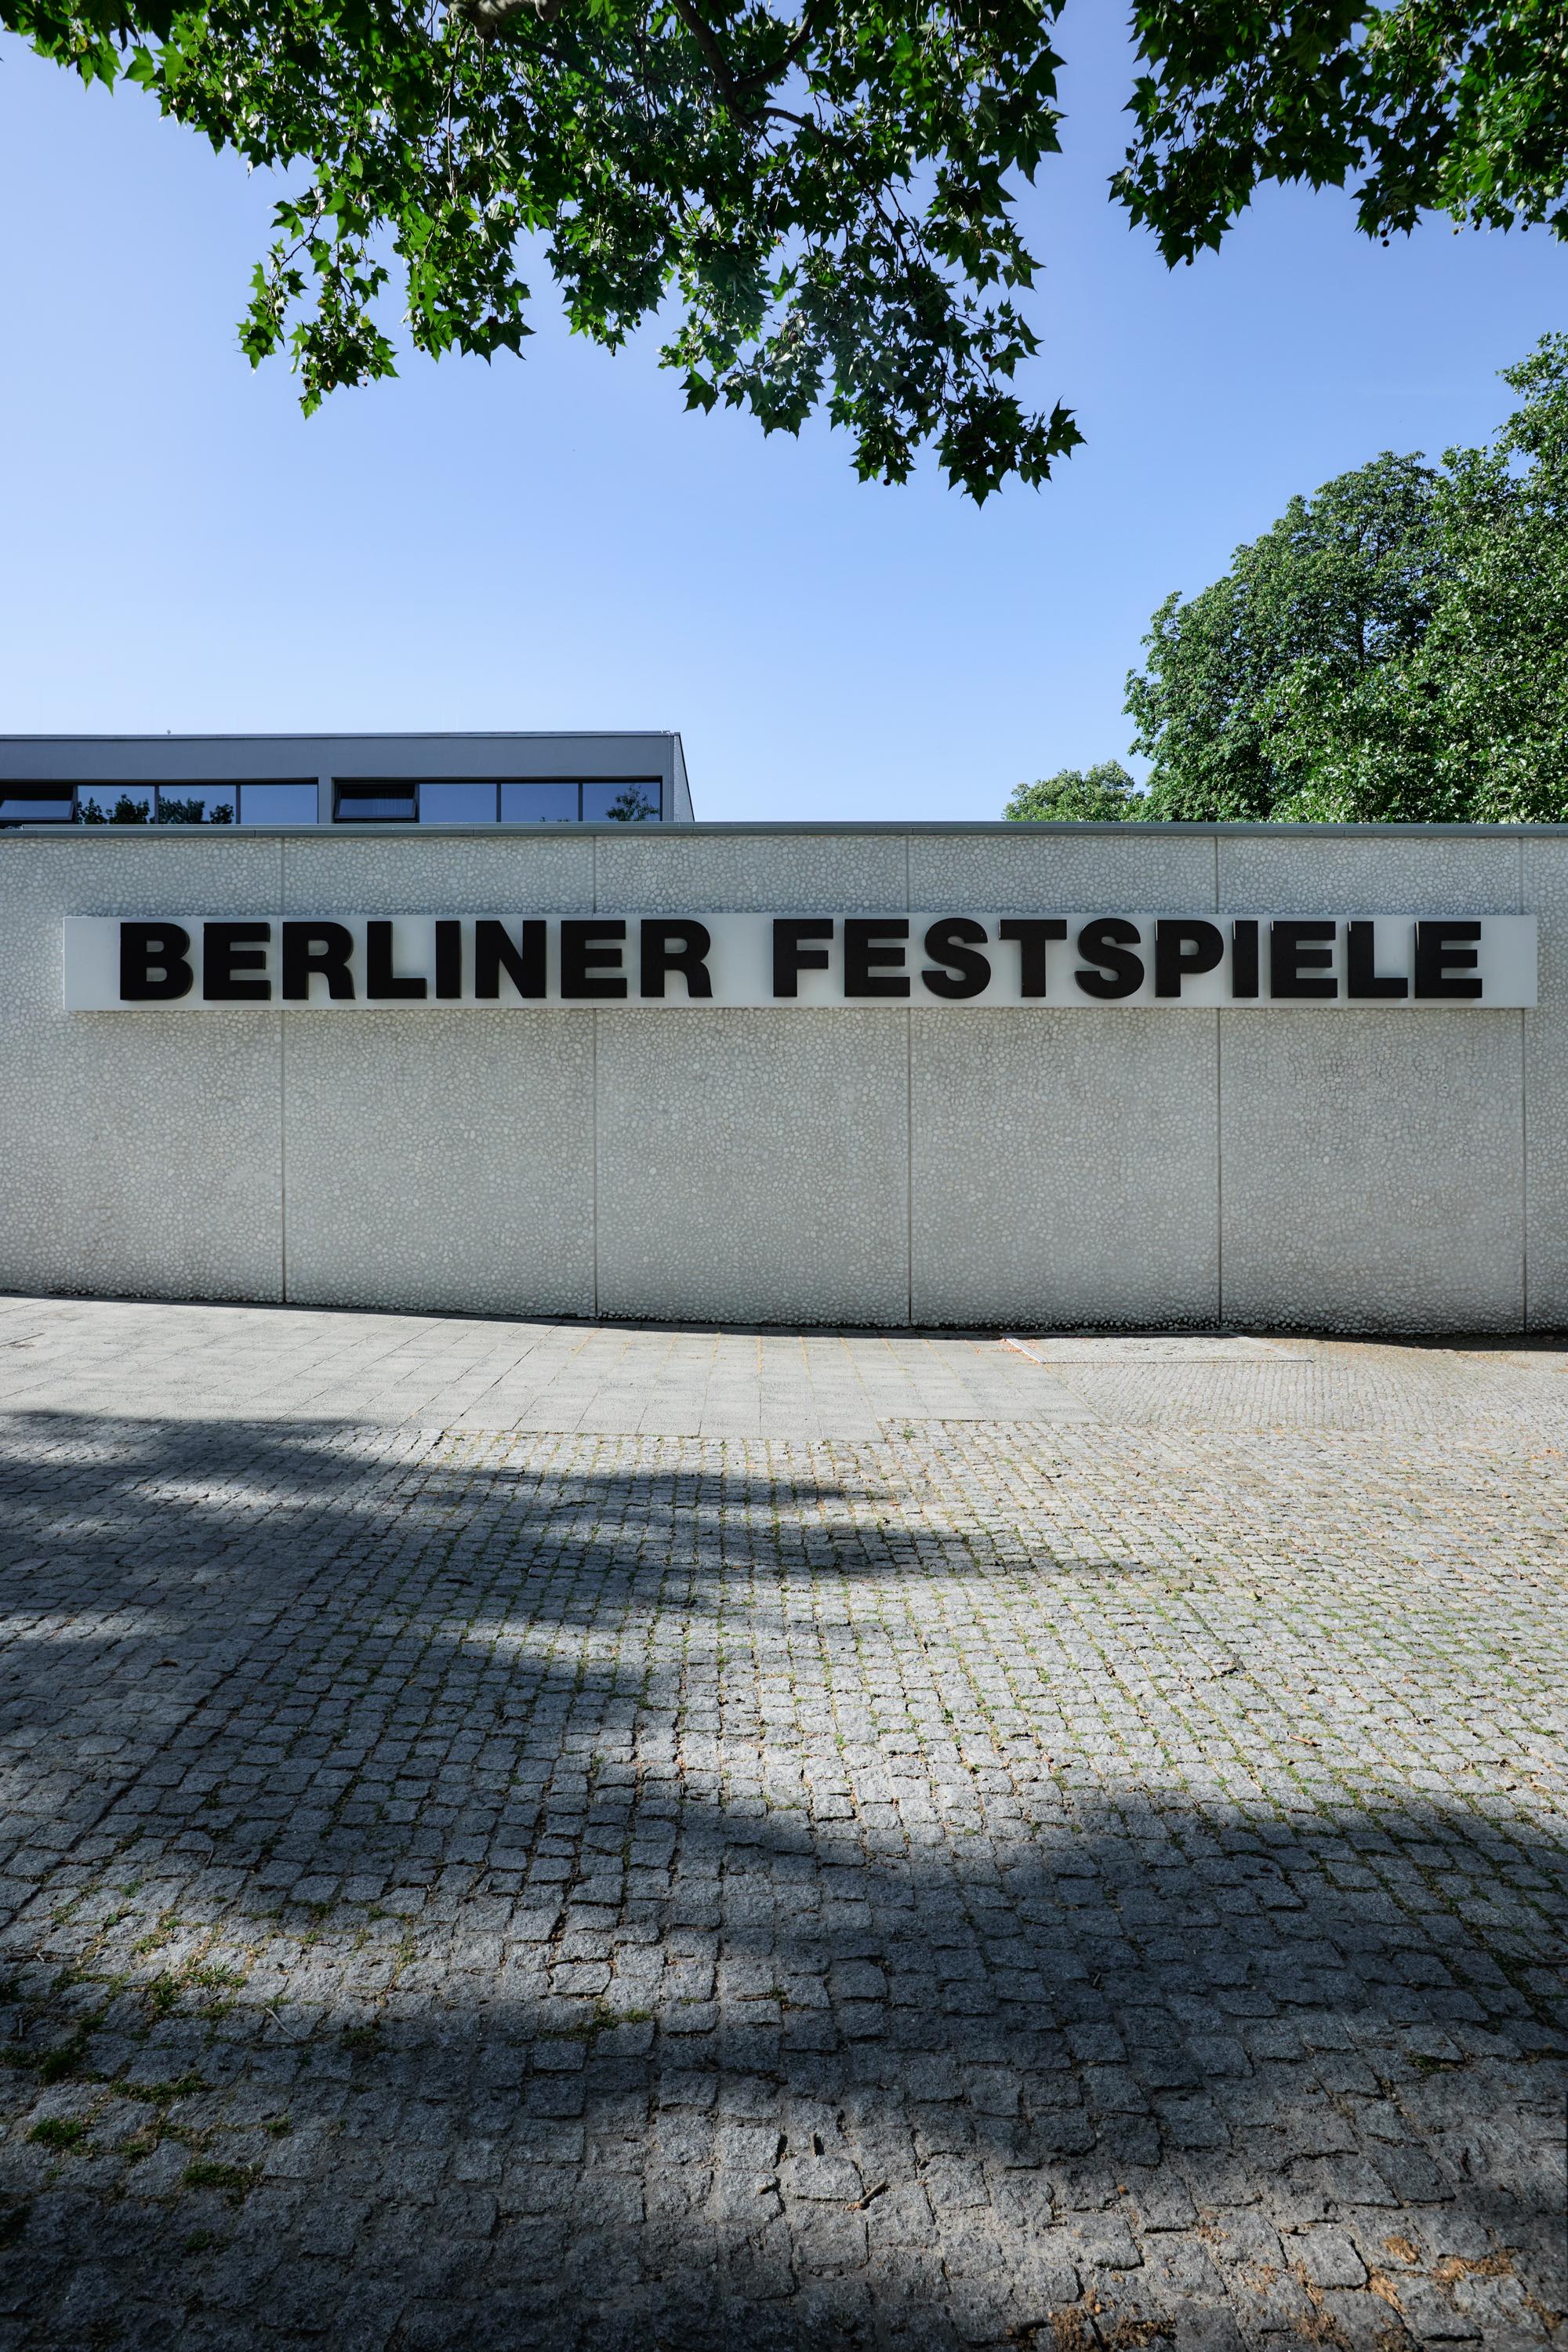 Frontalansicht des Haus der Berliner Festspiele. Zu sehen ist die Kassenhalle. Auf der Fassade steht in schwarzen Lettern "Berliner Festspiele" geschrieben.